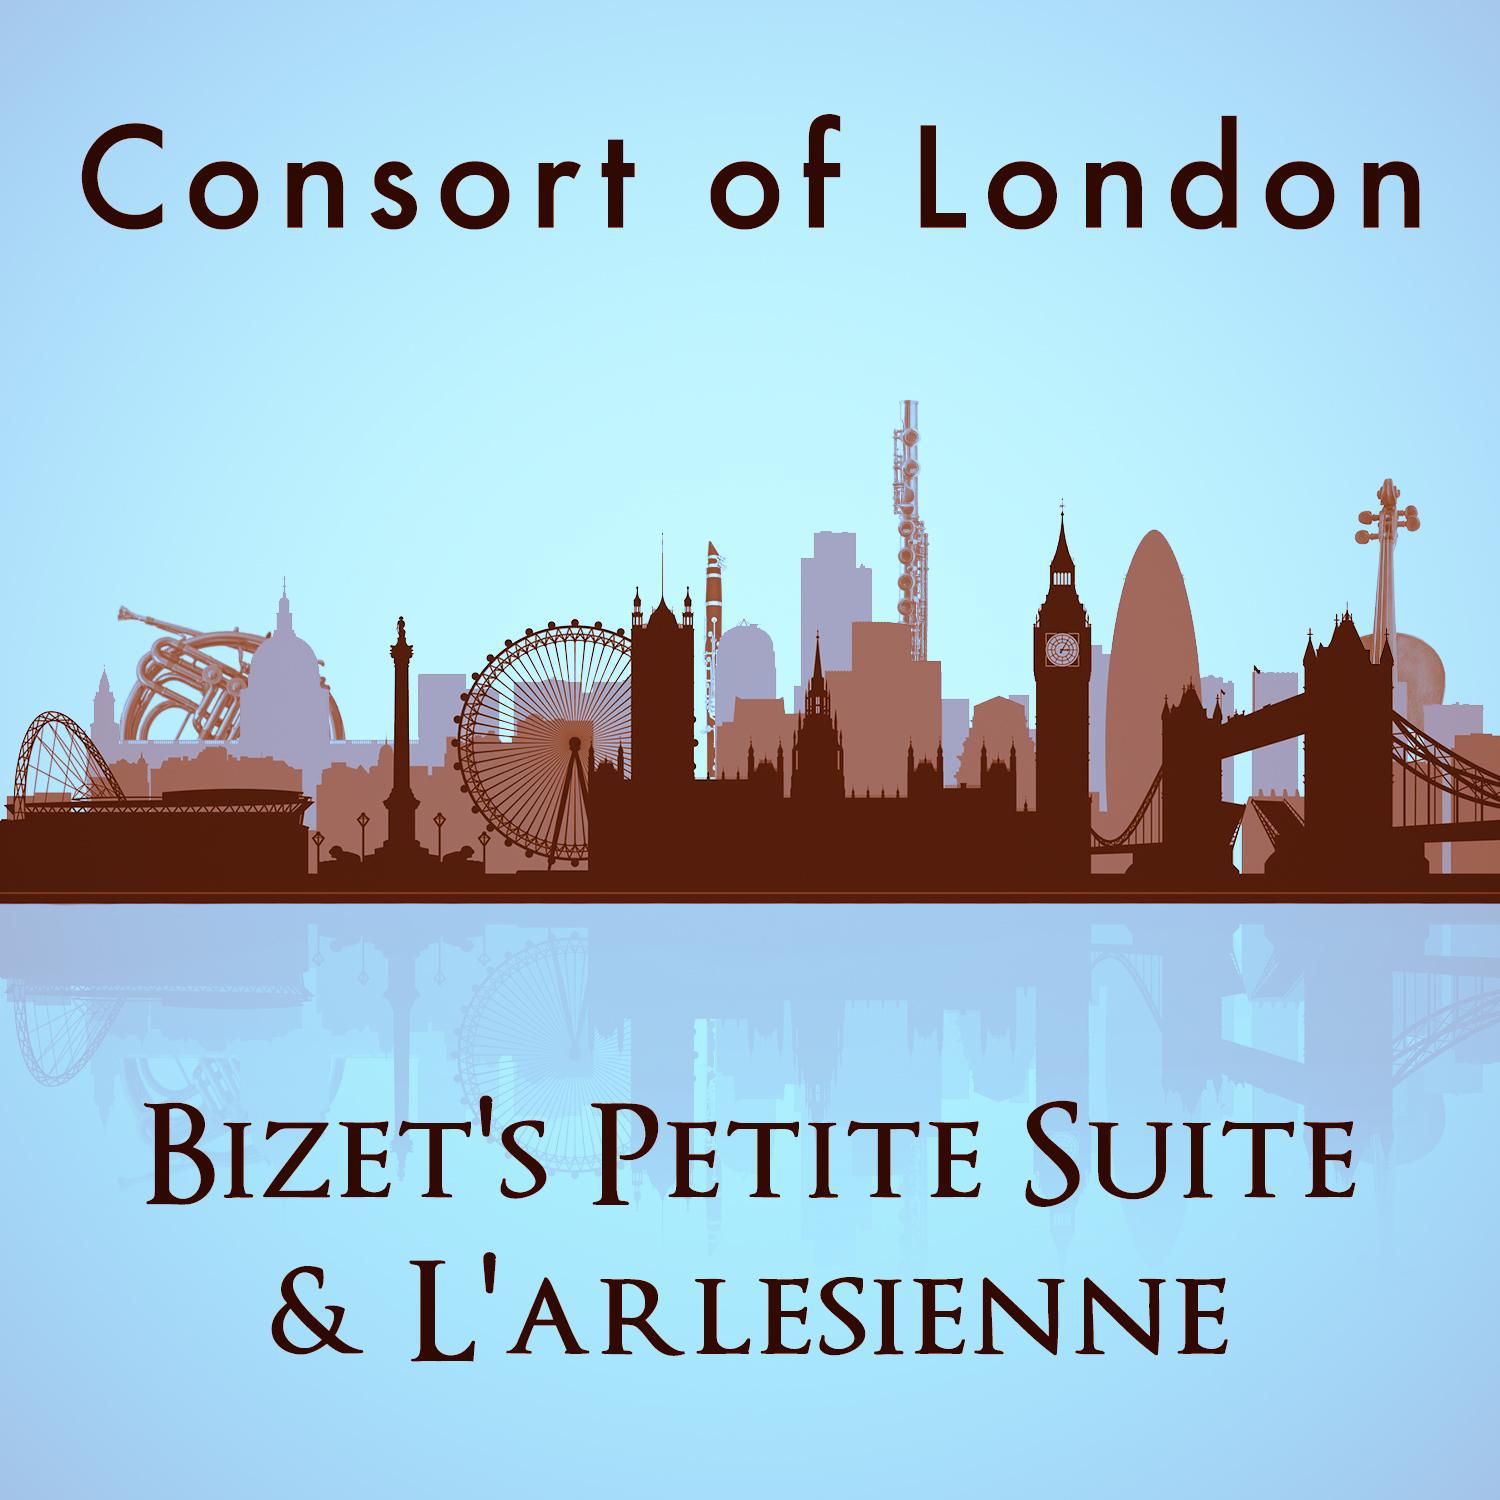 Consort of London: Bizet's Petite Suite & L'arlesienne